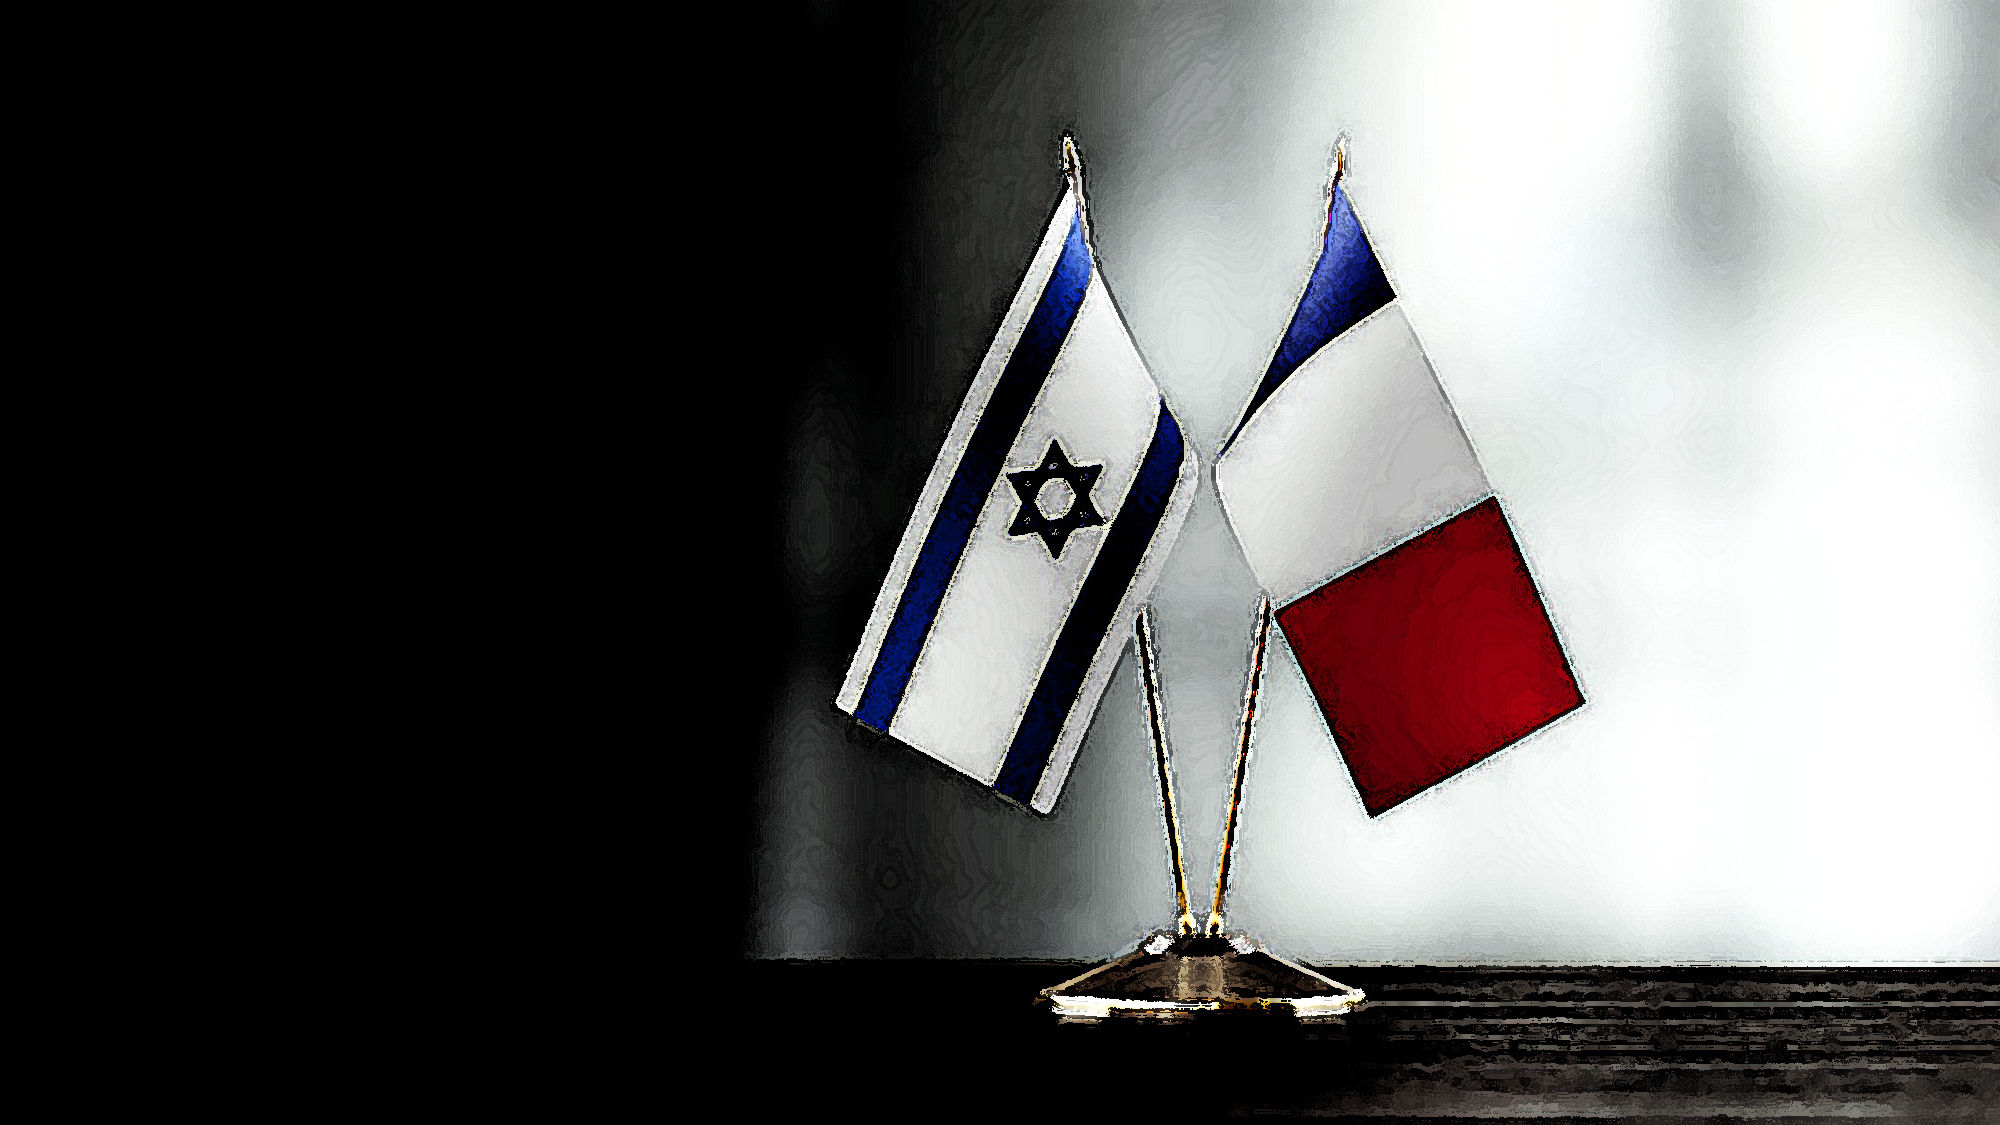 خطابات سياسية في فرنسا تعتبر من لم يخرج في مسيرة لدعم “إسرائيل” خائنا